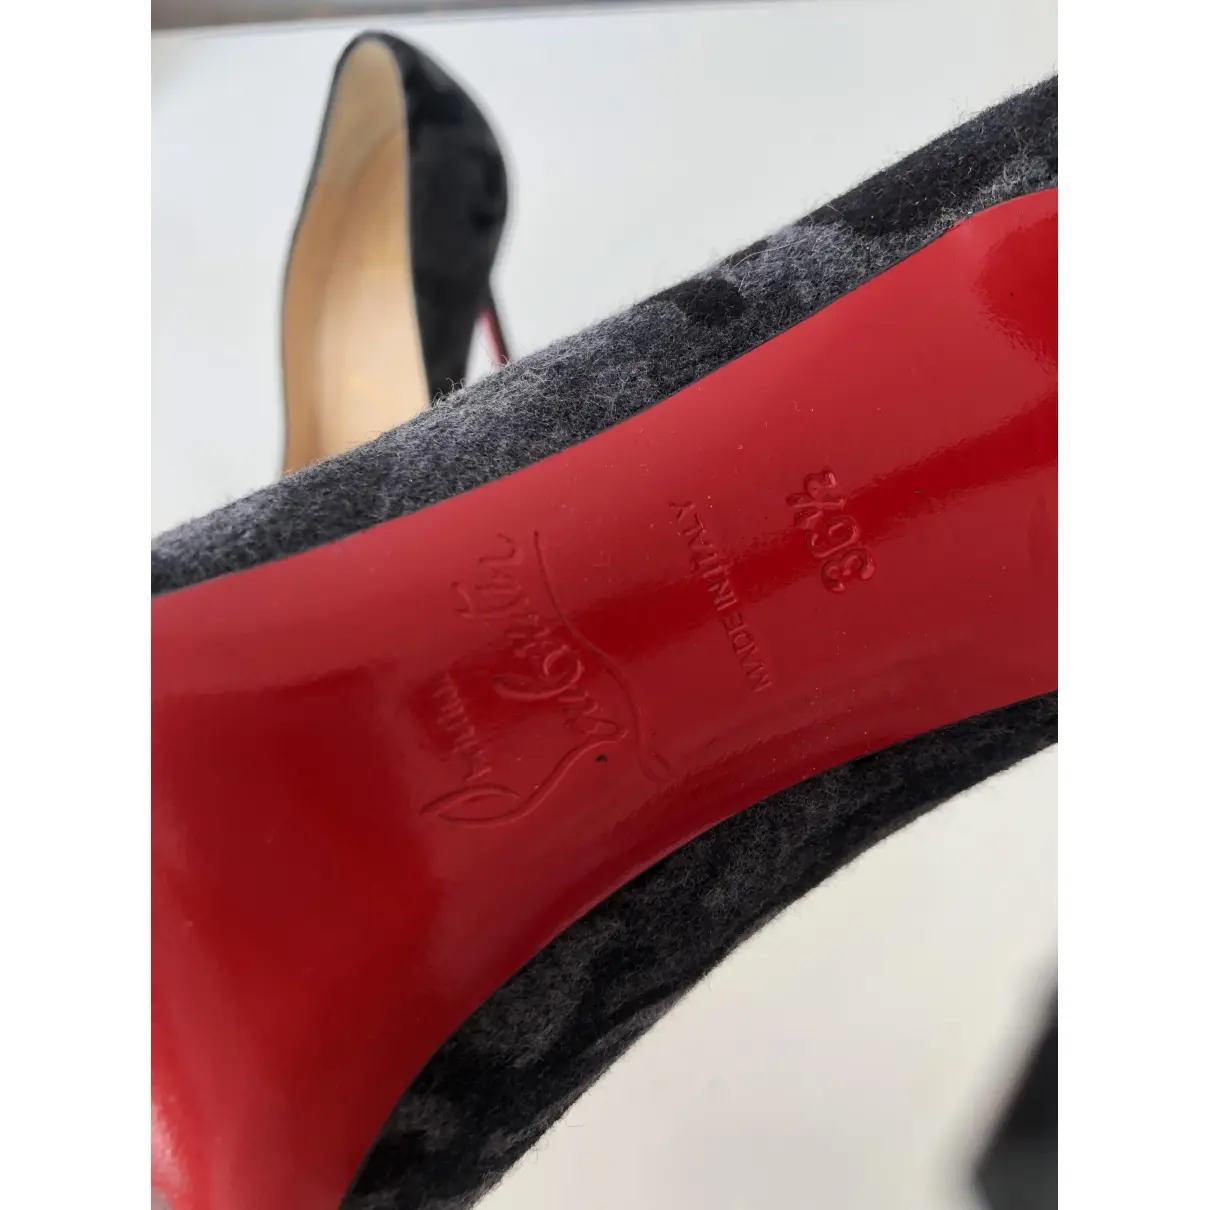 Buy Christian Louboutin Pigalle tweed heels online